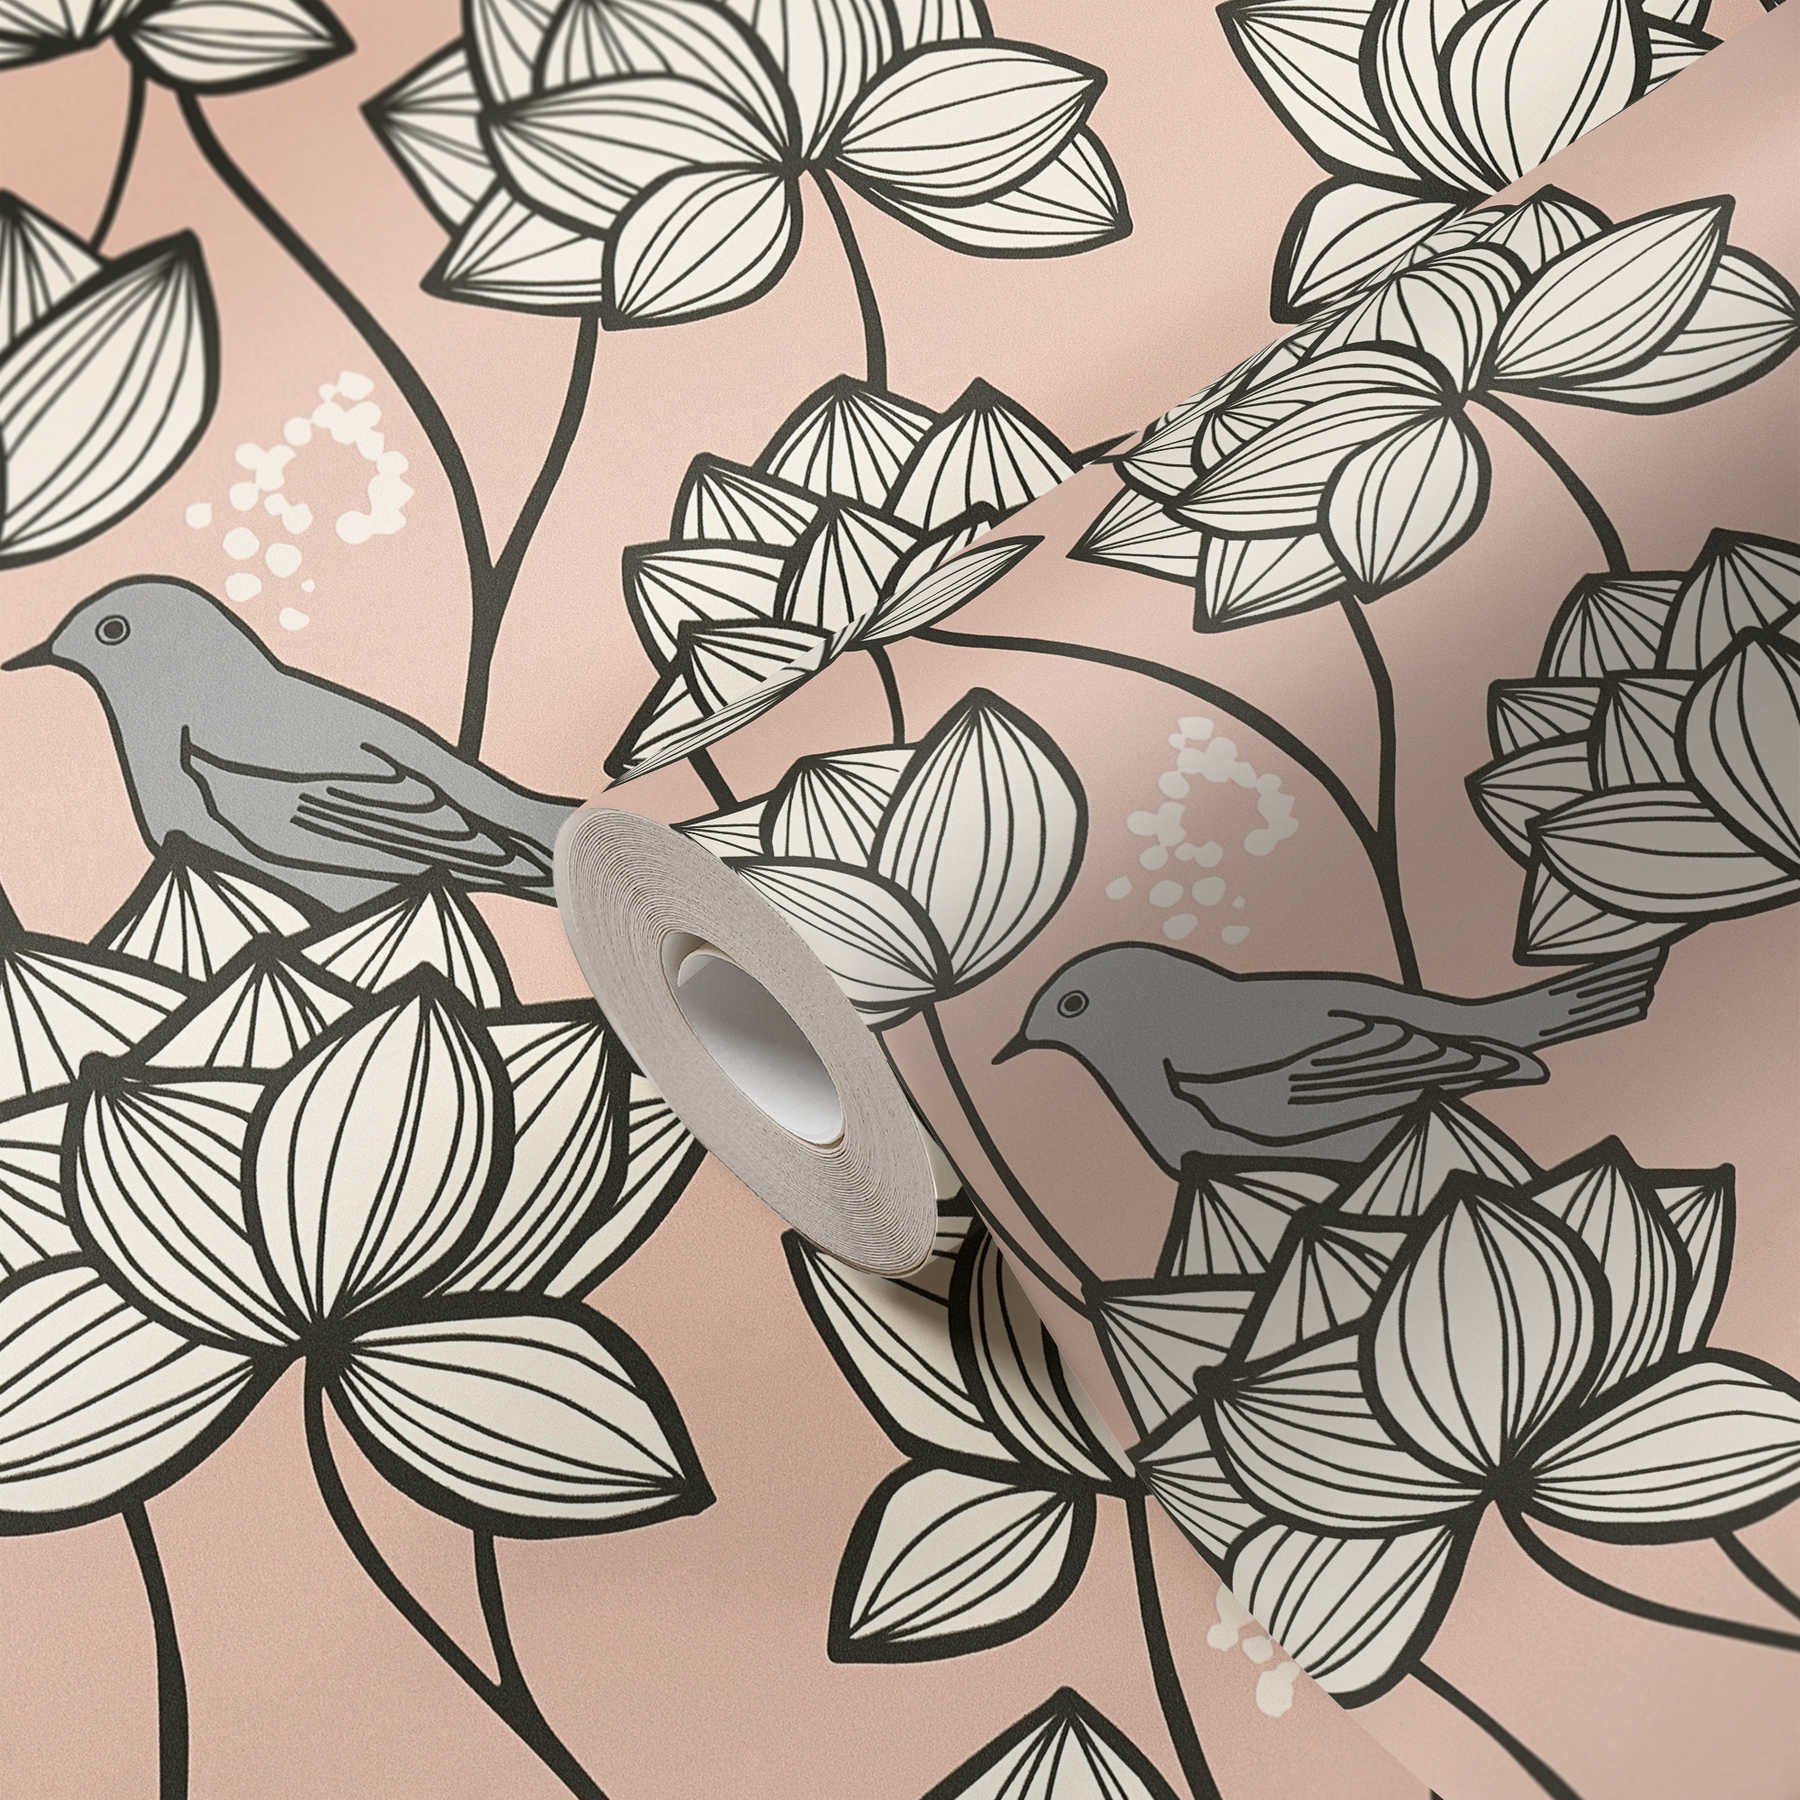             Papel pintado no tejido flores zarcillos con pájaros en estilo line art - gris, rosa
        